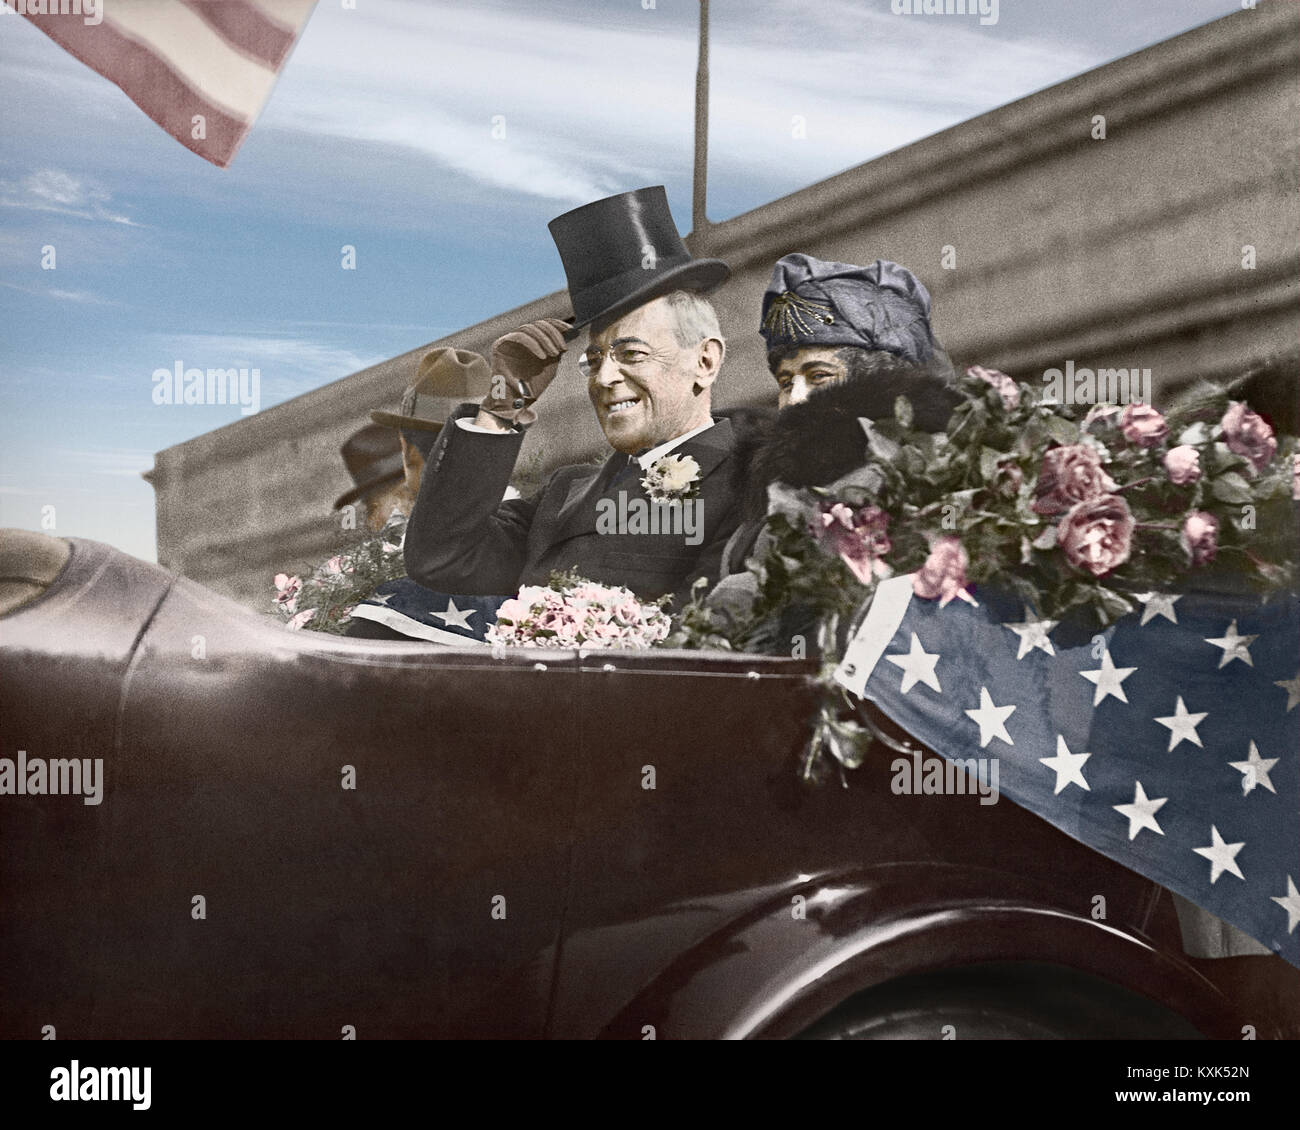 Präsident Woodrow Wilson und seine Frau Edith in einem offenen Parade Auto auf Tour Unterstützung der Liga der Nationen zu suchen. September 1919. Bild von der Kamera 5 Eingefärbte x 7 Zoll Glas negativ. Stockfoto